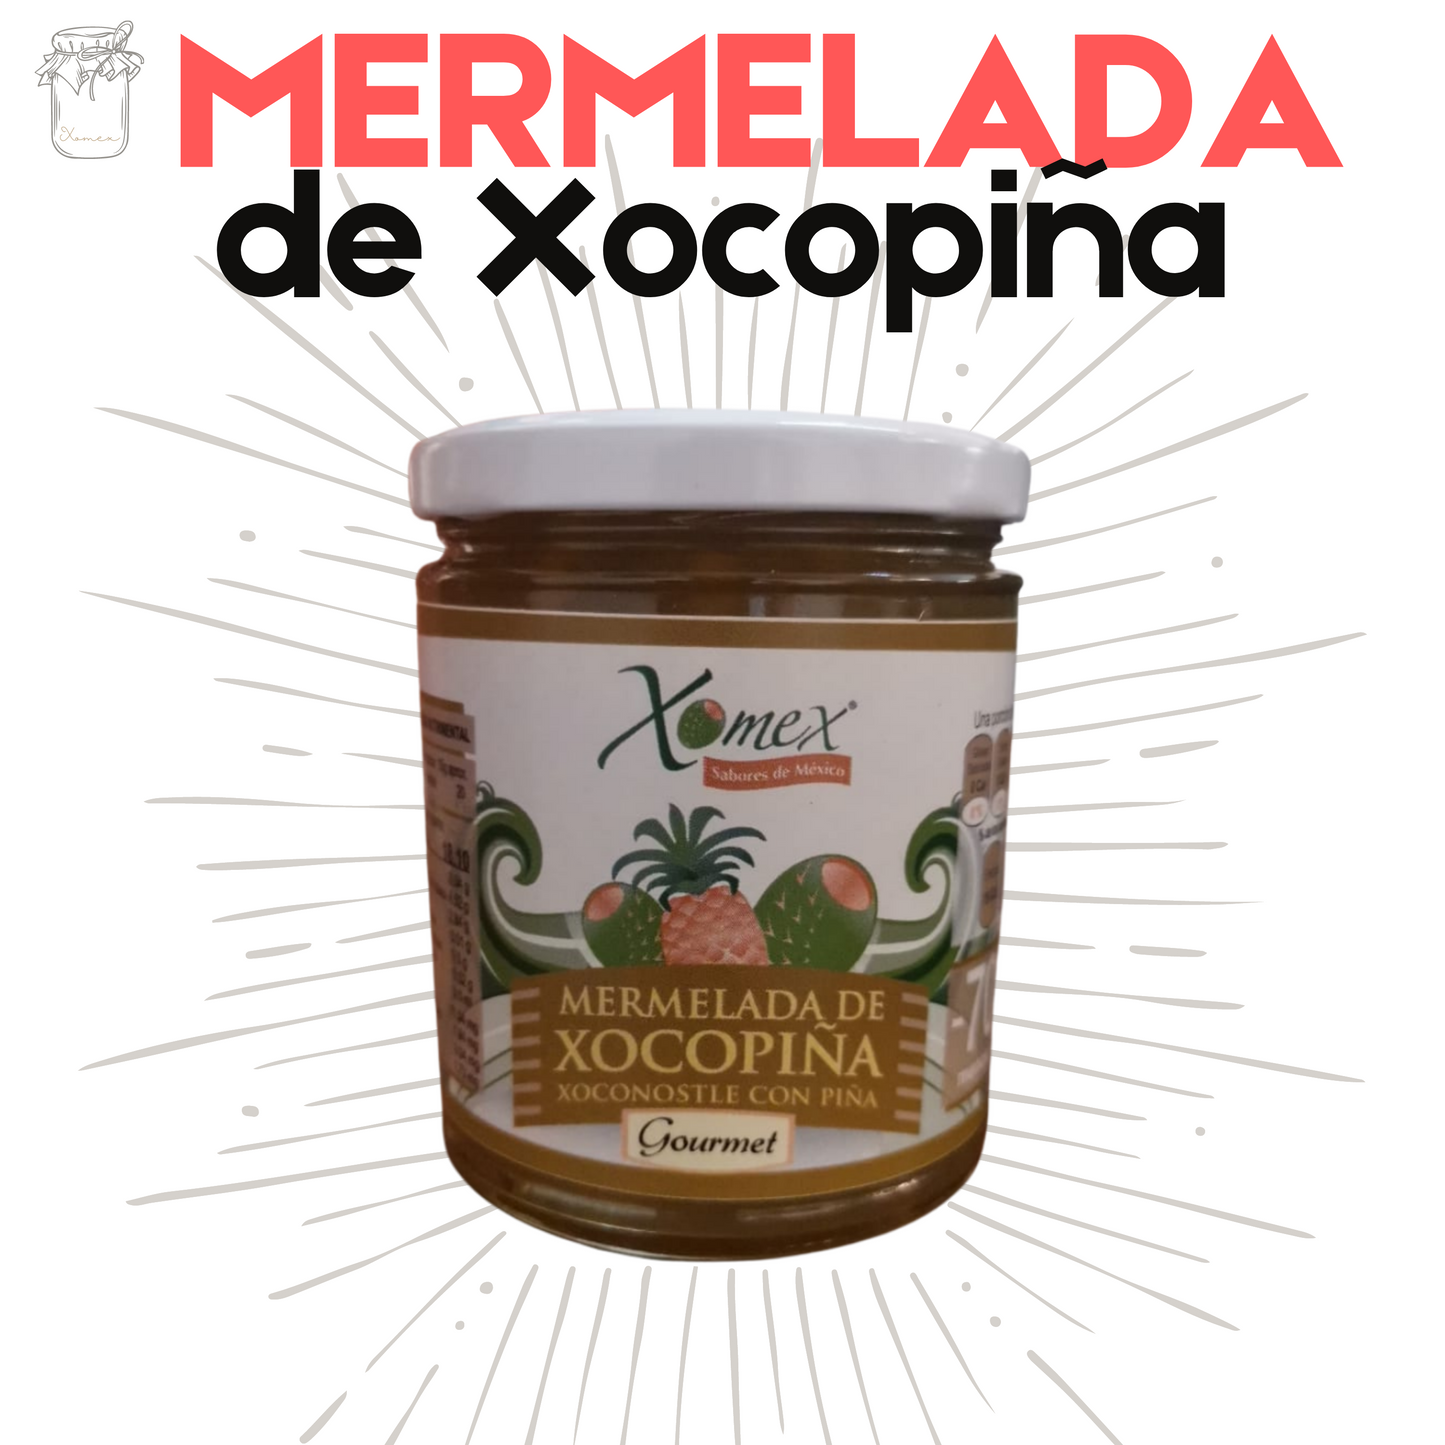 Mermelada de Xocopiña | Xoconostle y Piña | 100% natural | 300g | Mexpofood